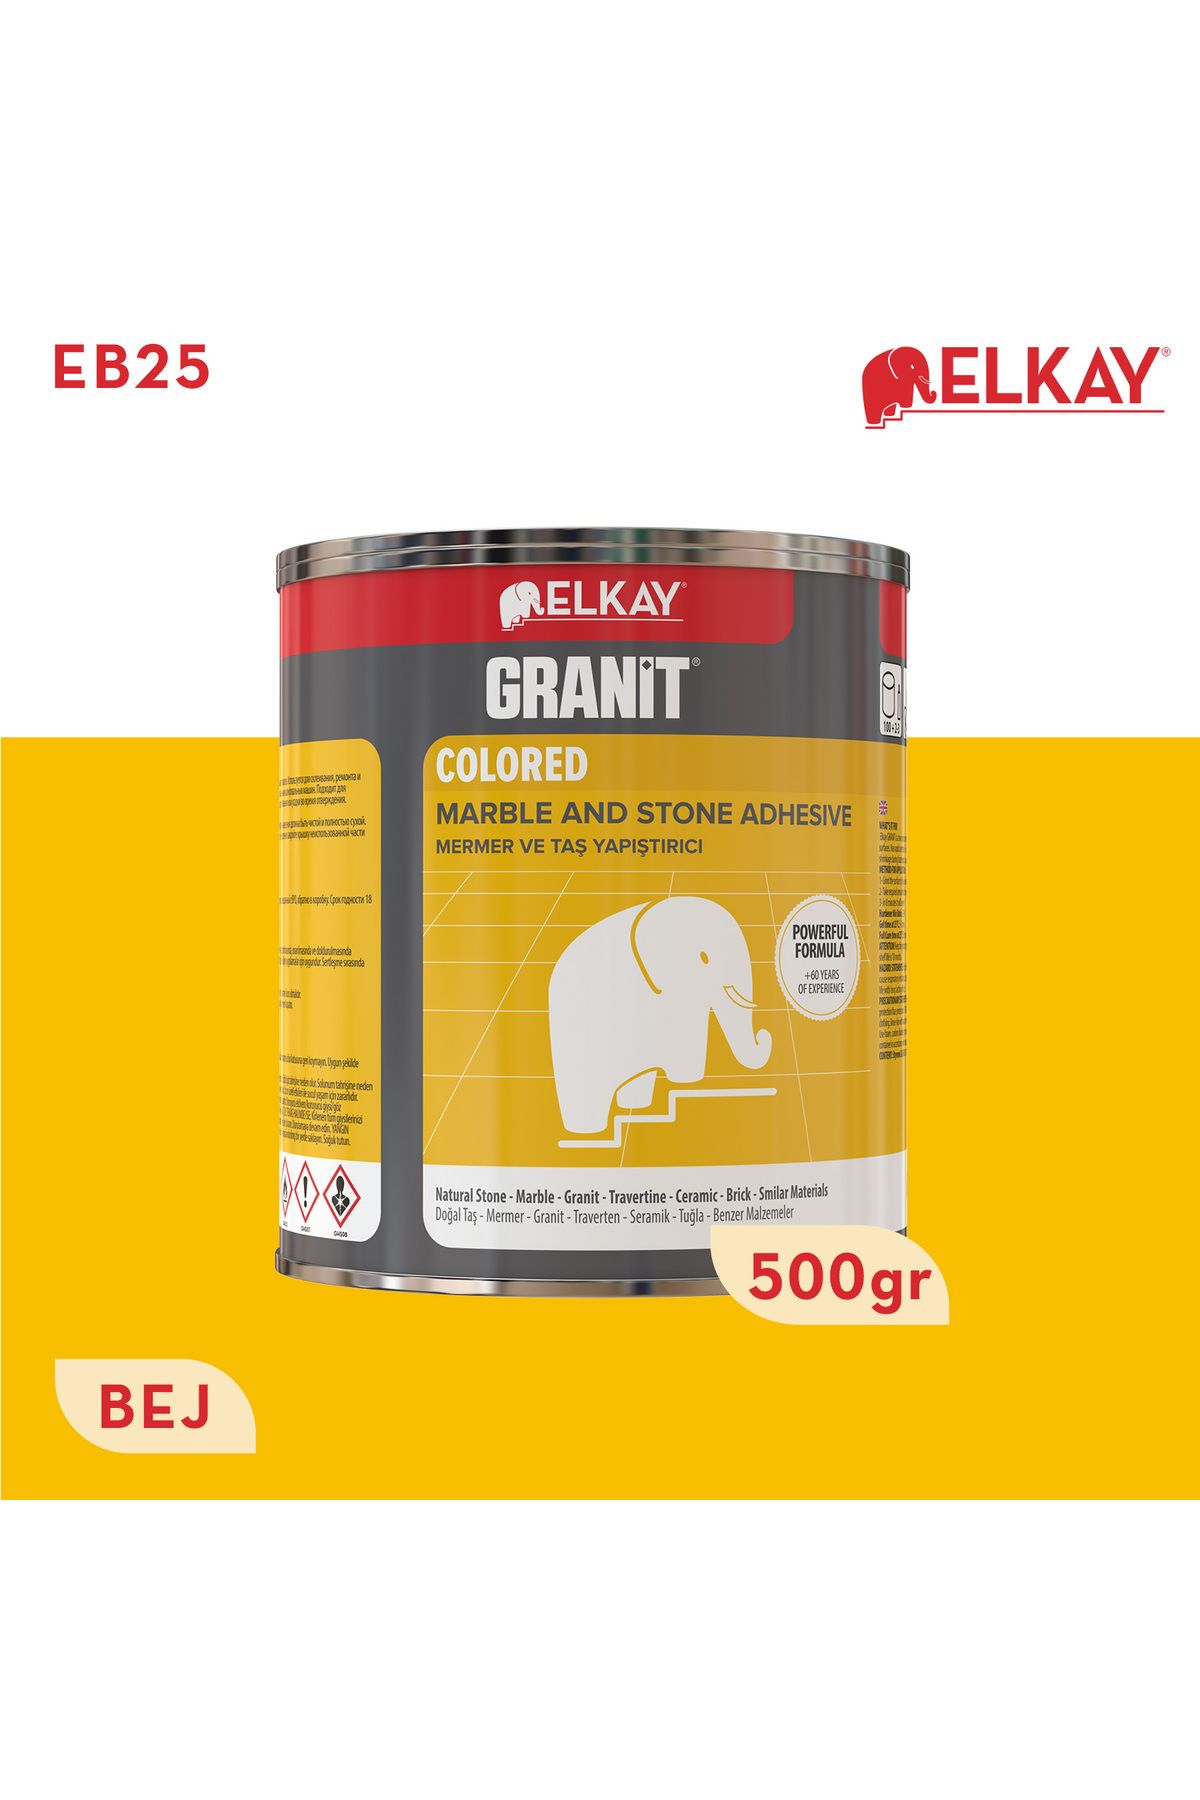 Elkay Eb25 Granit Mermer Ve Taş Yapıştırıcı Bej 500 gr